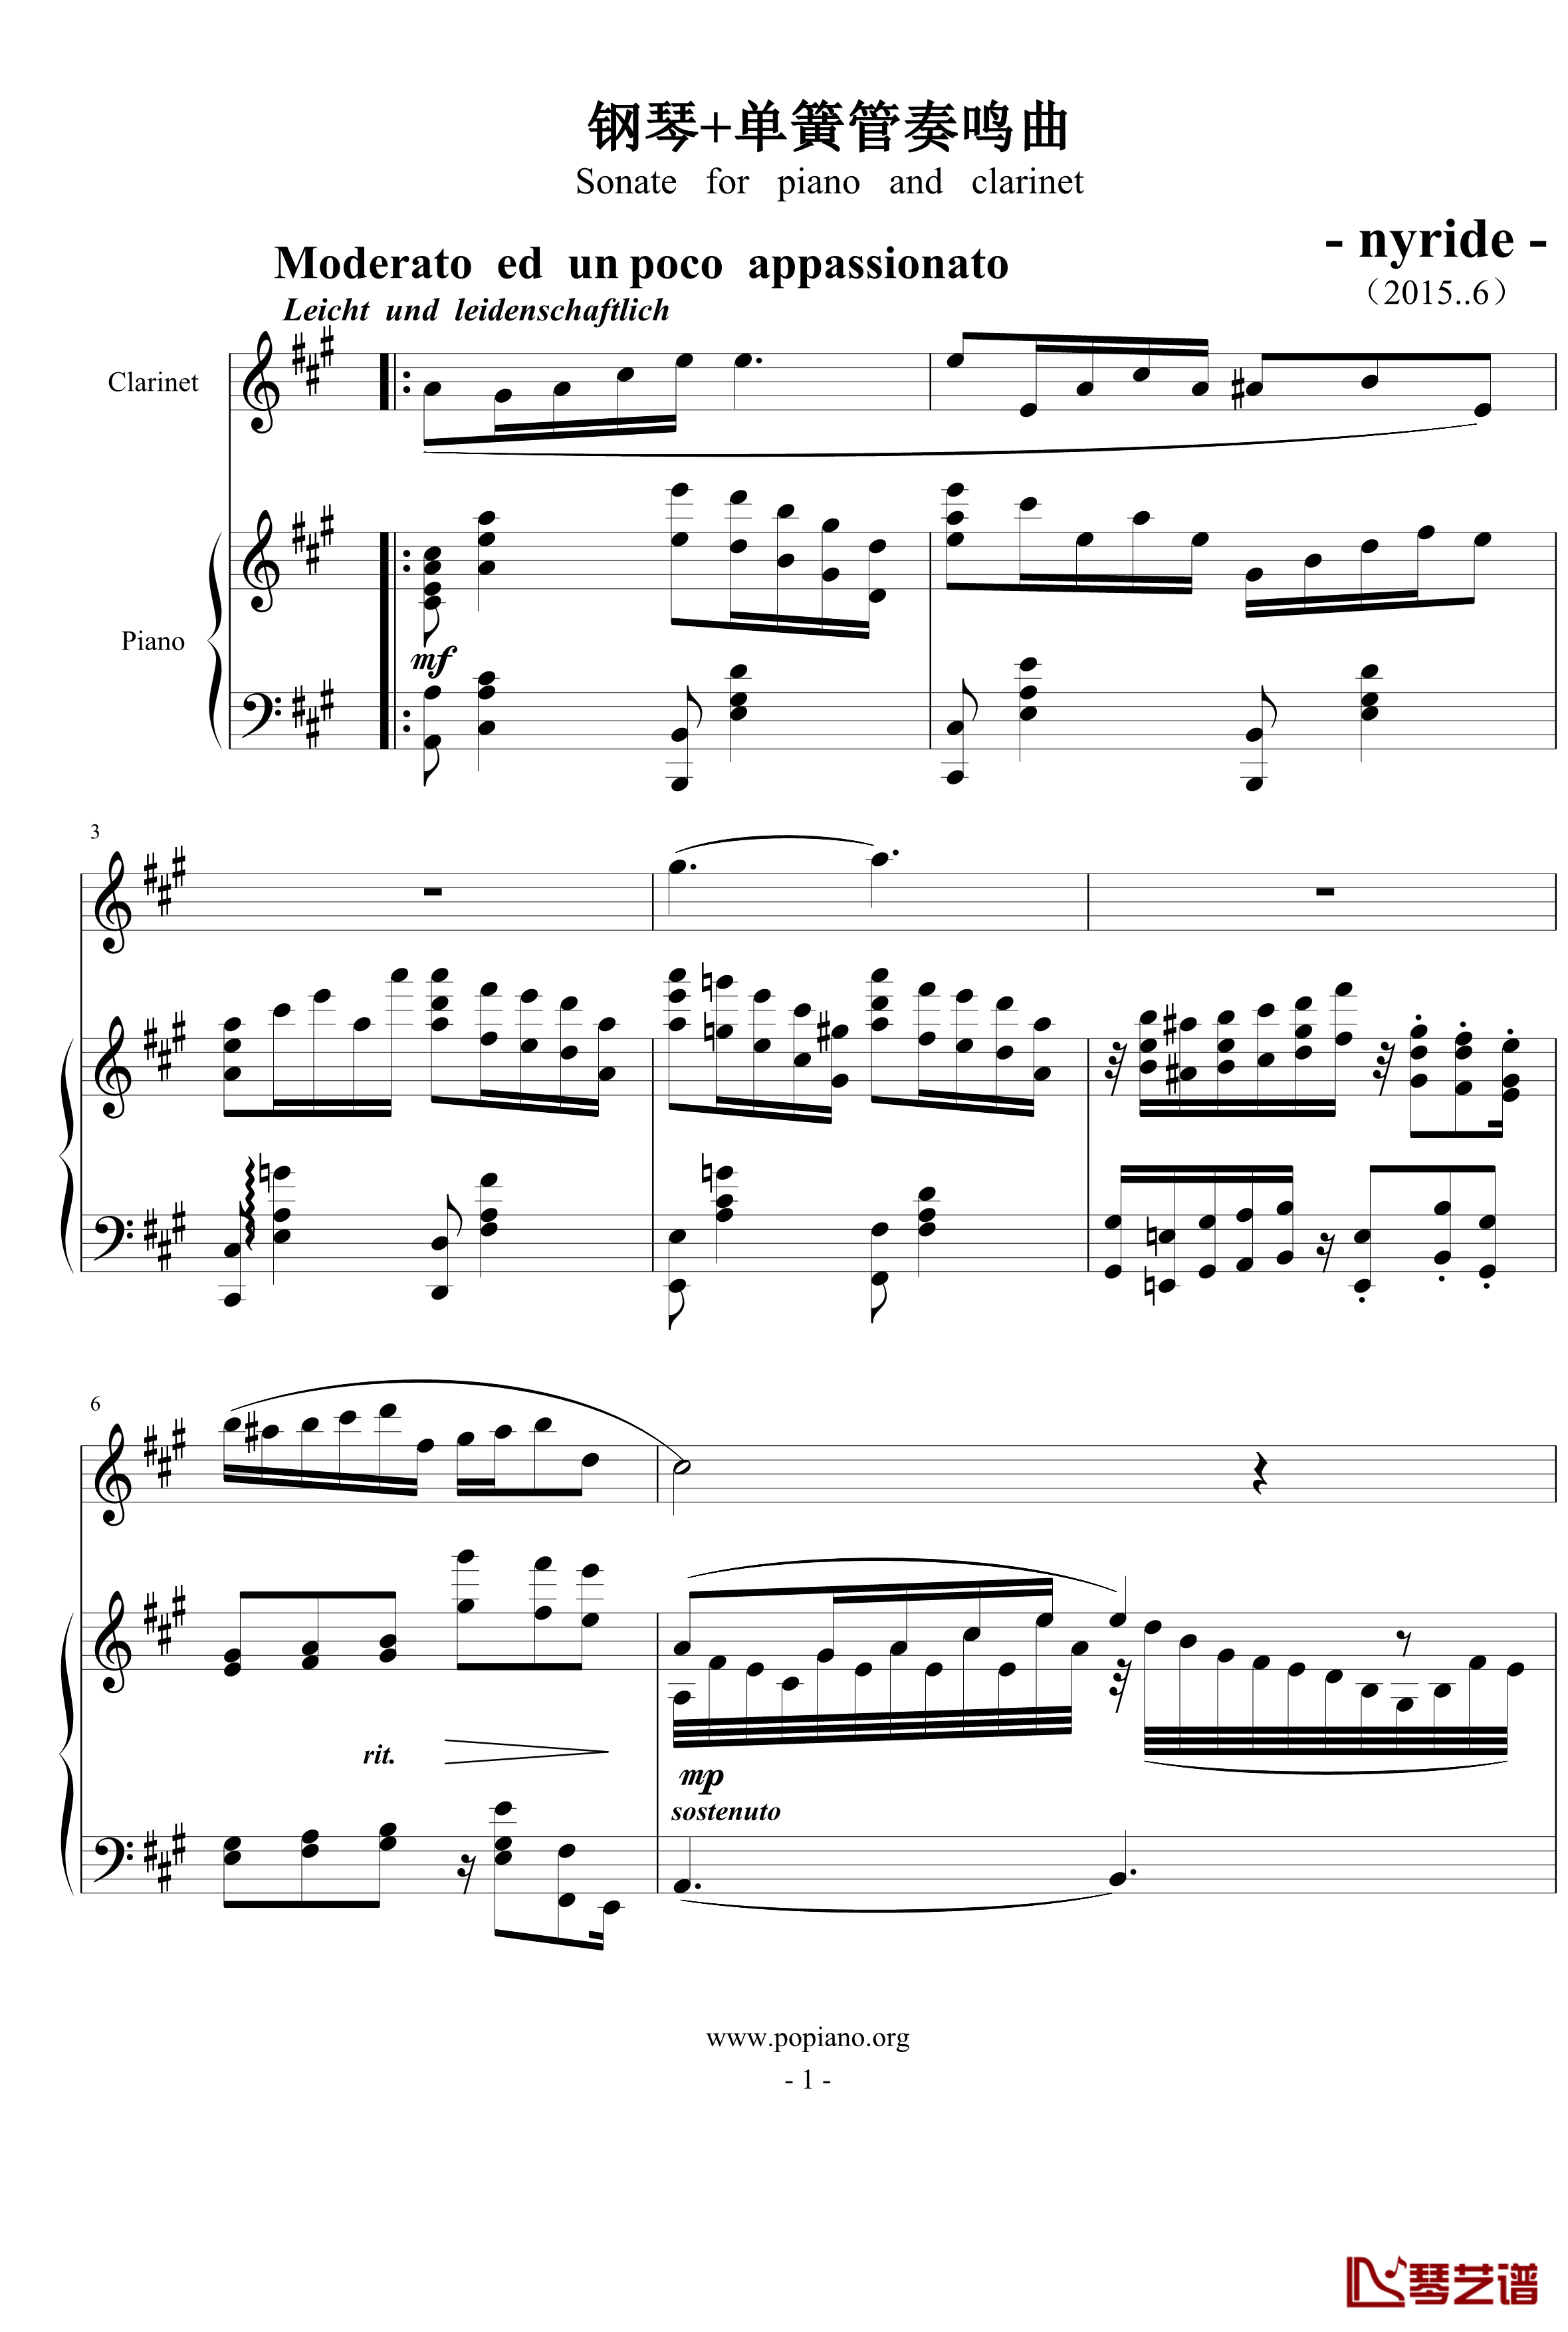 钢琴单簧管小奏鸣曲钢琴谱-nyride1